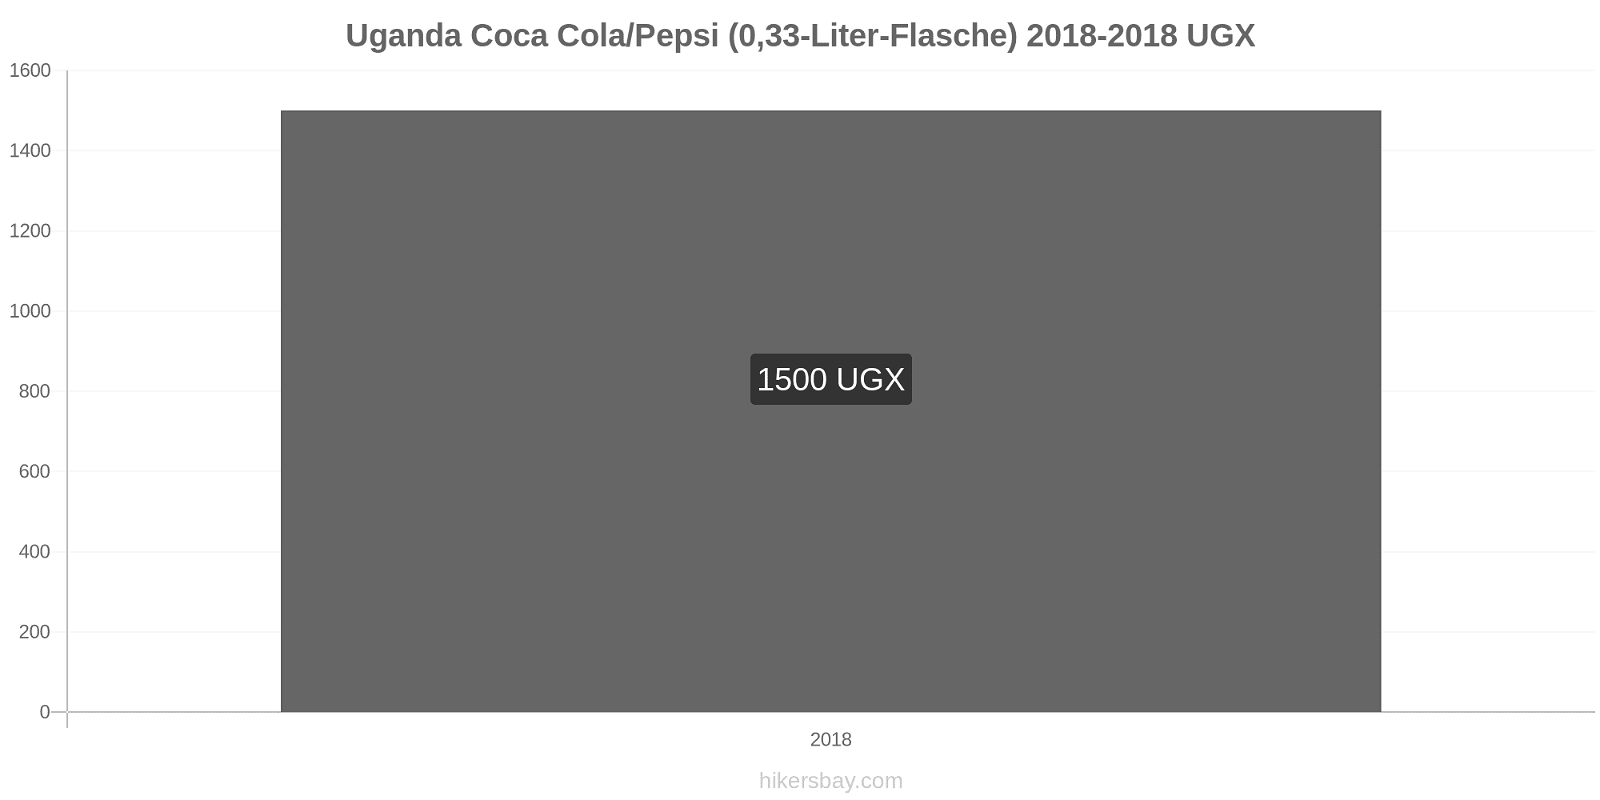 Uganda Preisänderungen Coke/Pepsi (0.33-Liter-Flasche) hikersbay.com